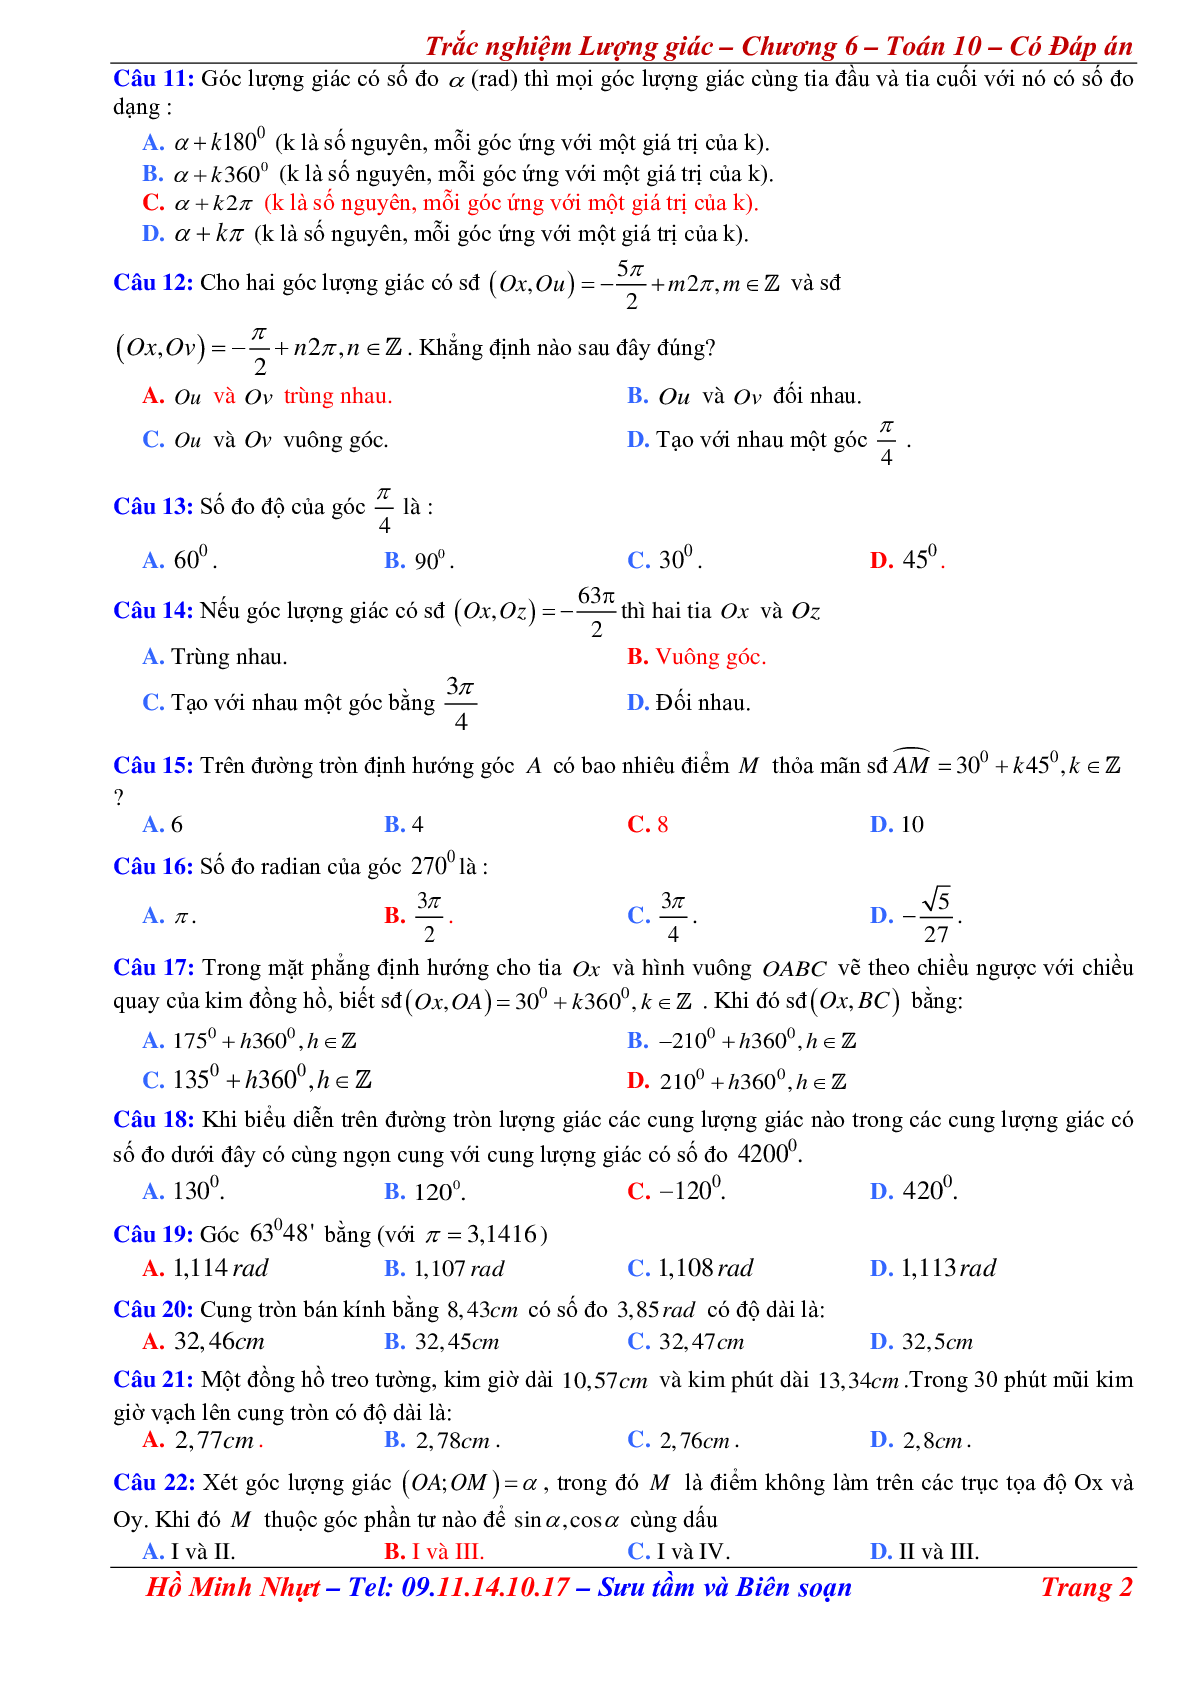 310 Bài tập trắc nghiệm công thức lượng giác có đáp án (trang 2)